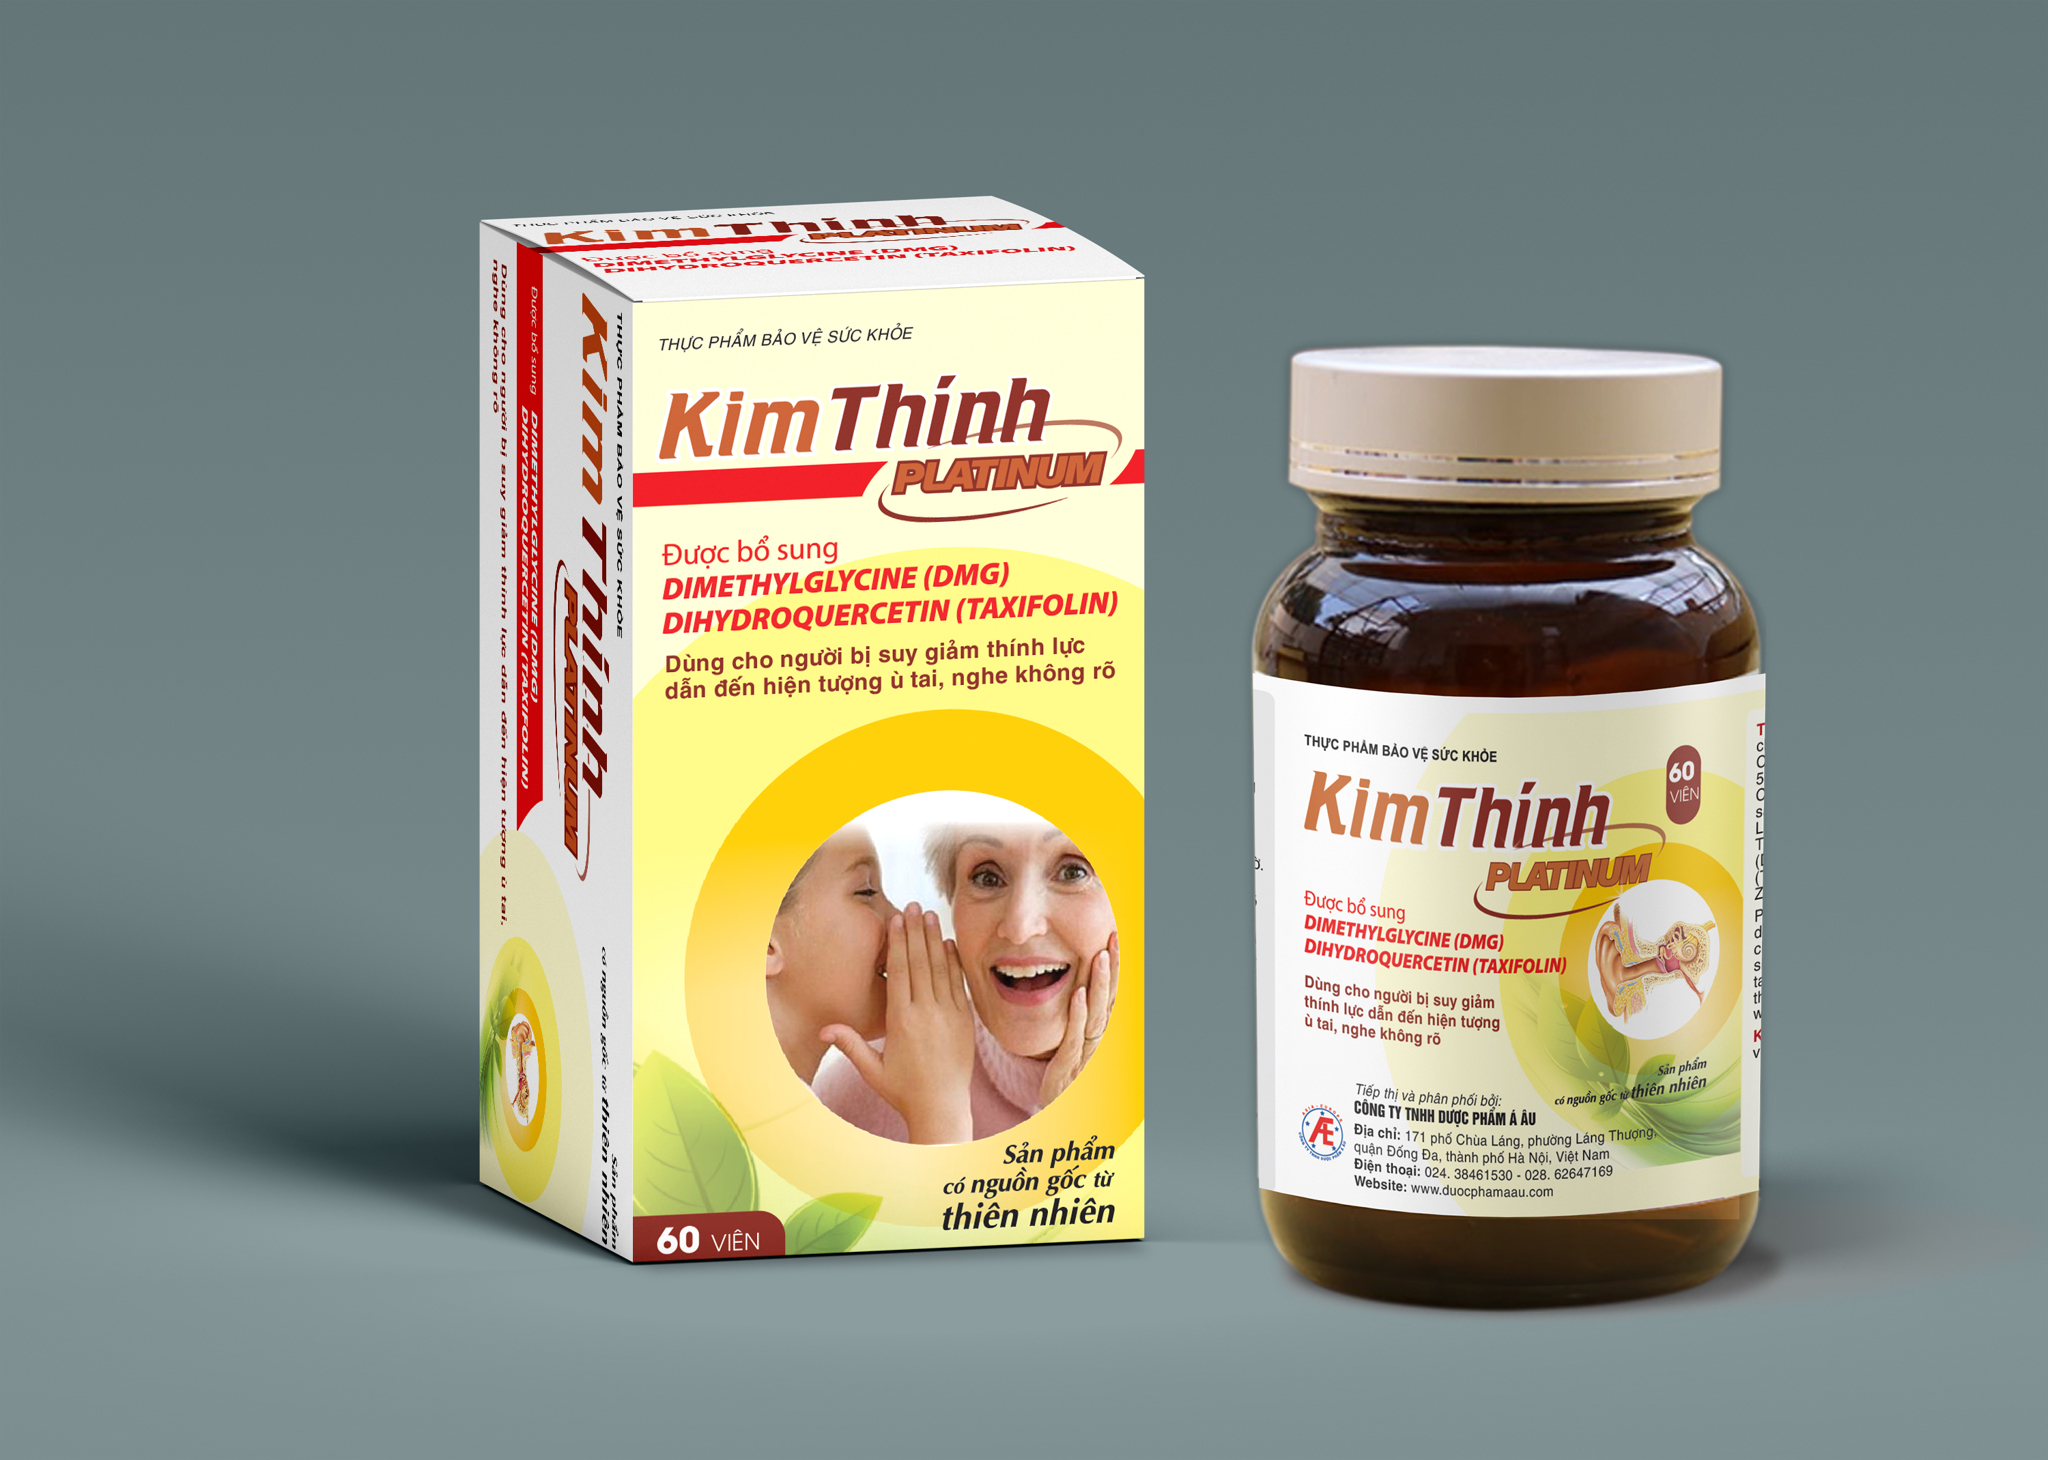 Nhãn hàng Kim Thính đã có thêm sản phẩm Kim Thính Platinum mang tới hiệu quả nhanh và bền vững hơn